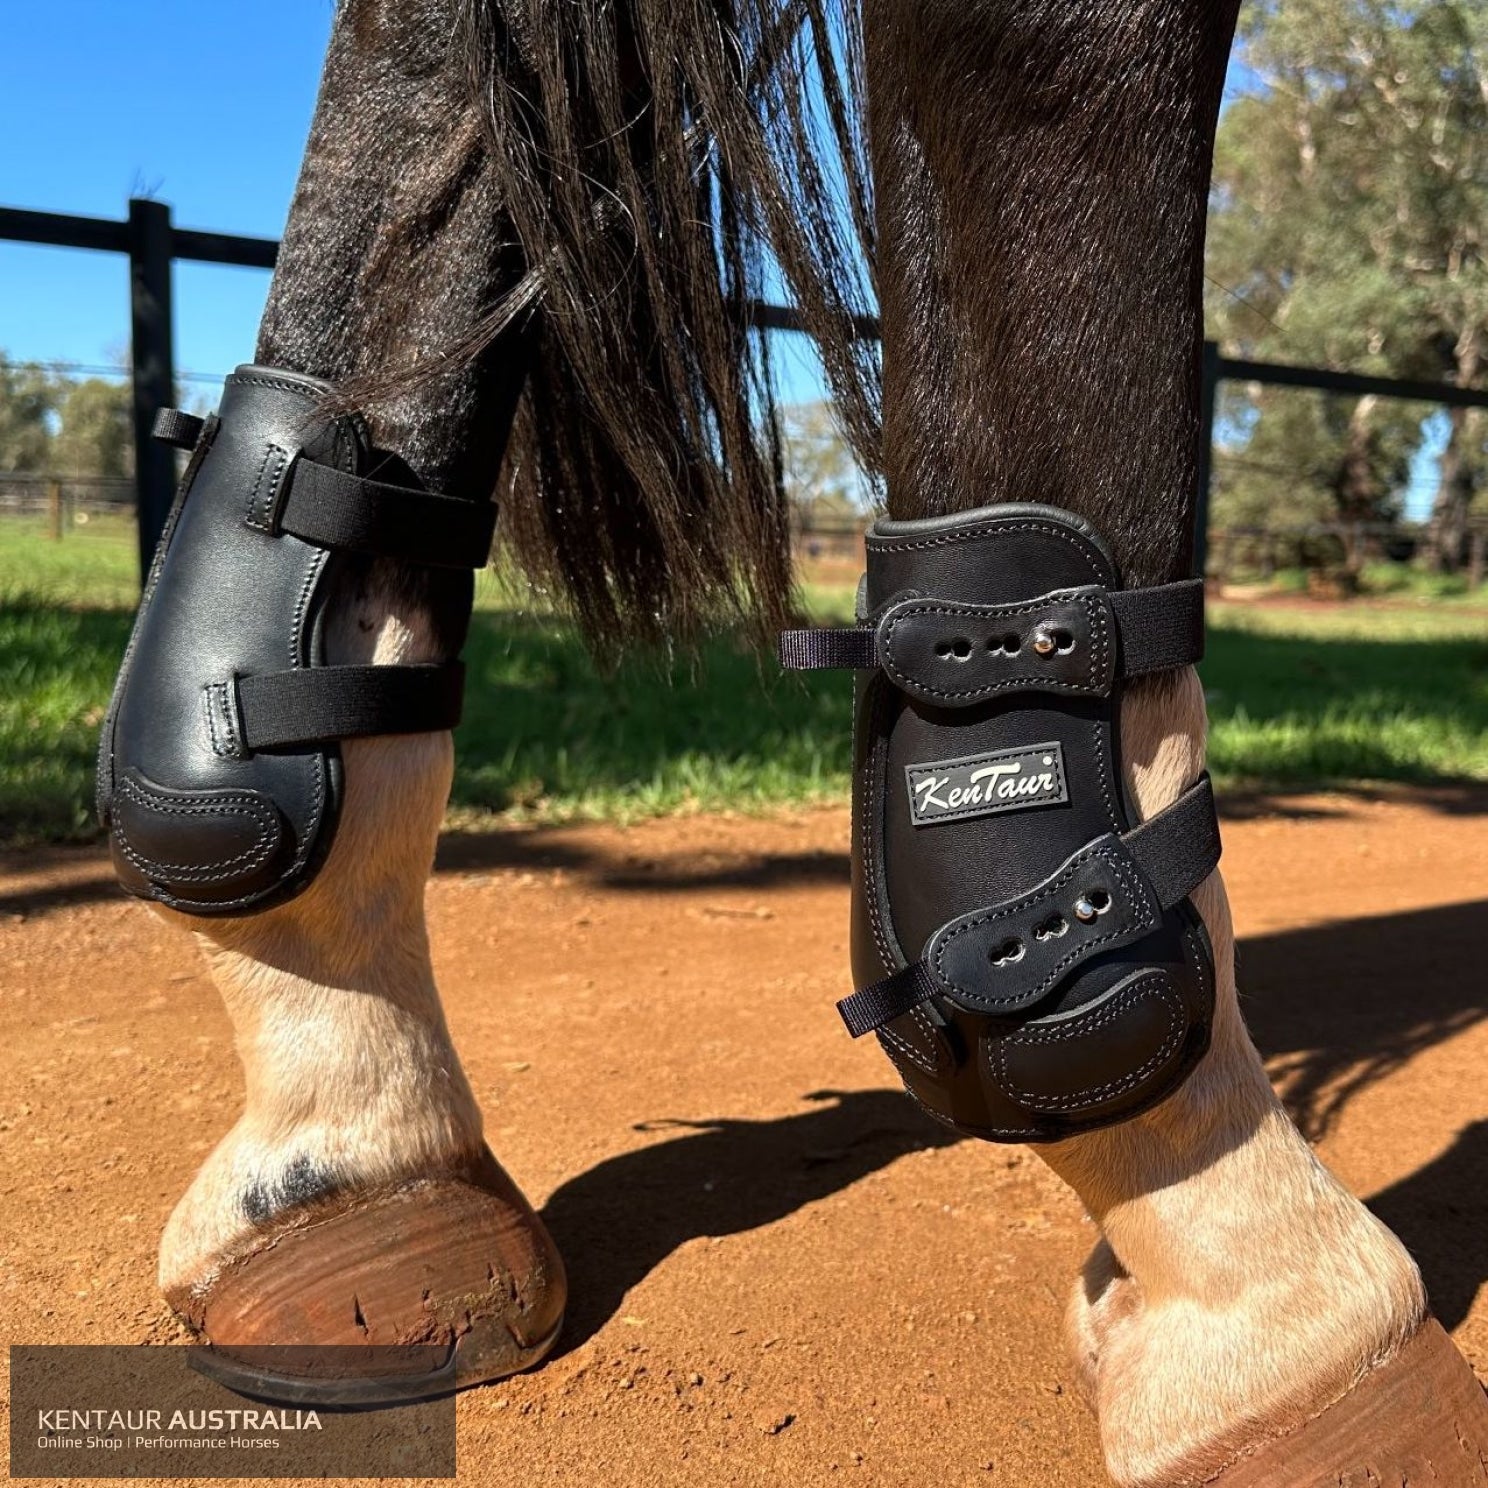 Kentaur ’Flicker 20cm’ Hind Boot Black / Full Jumping Boots